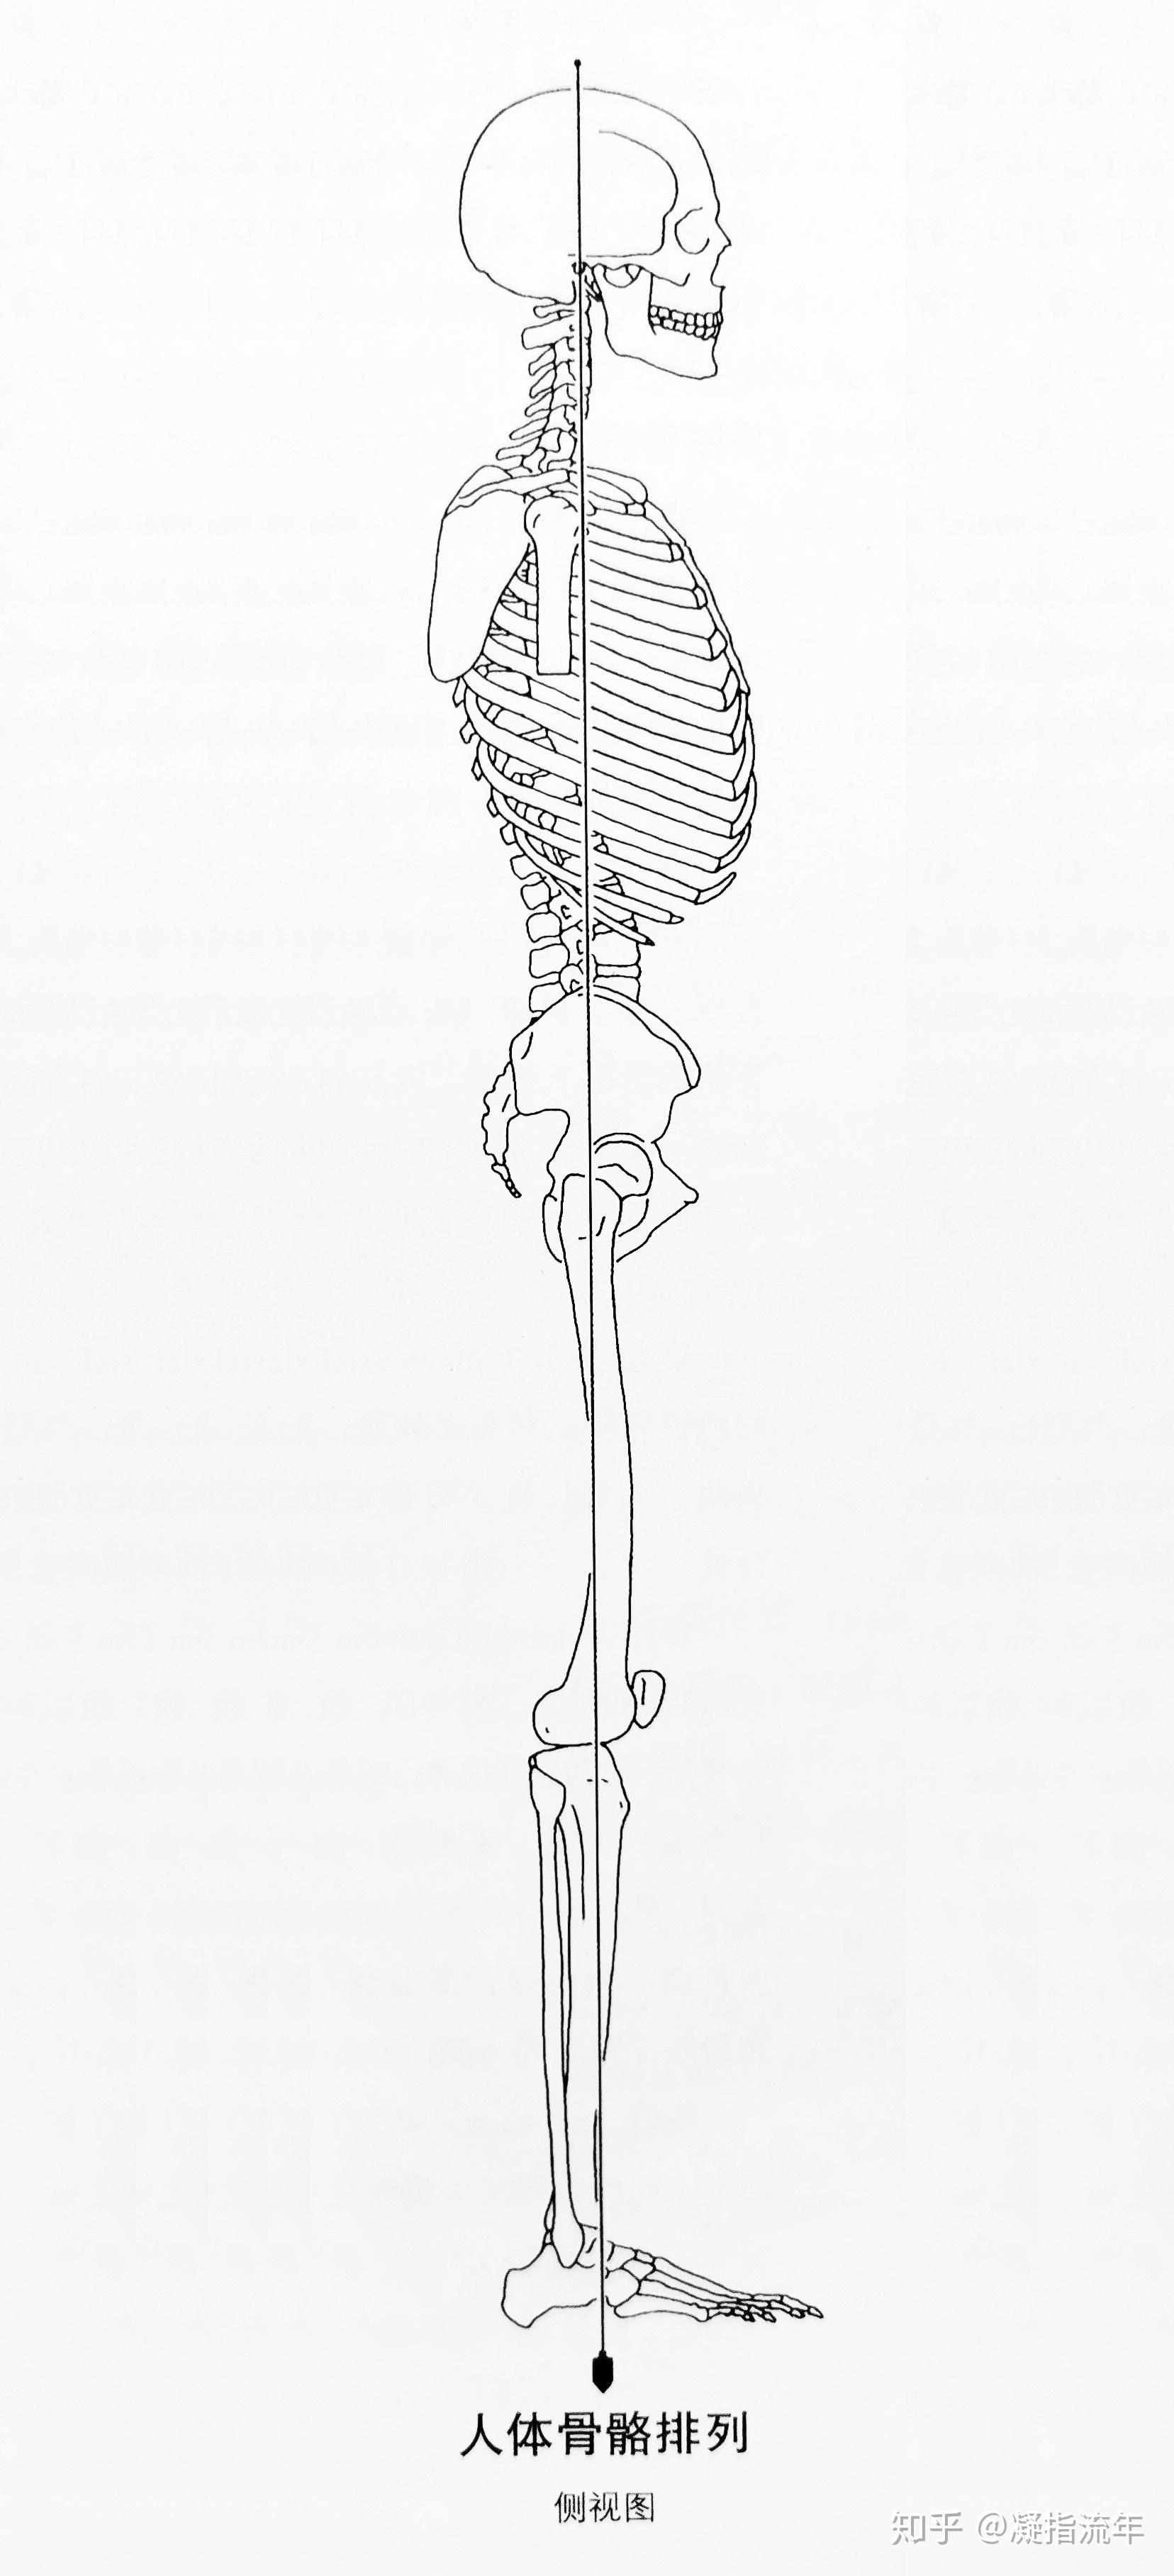 坚持学画:骨连接——附肢骨骼(下肢骨部分)